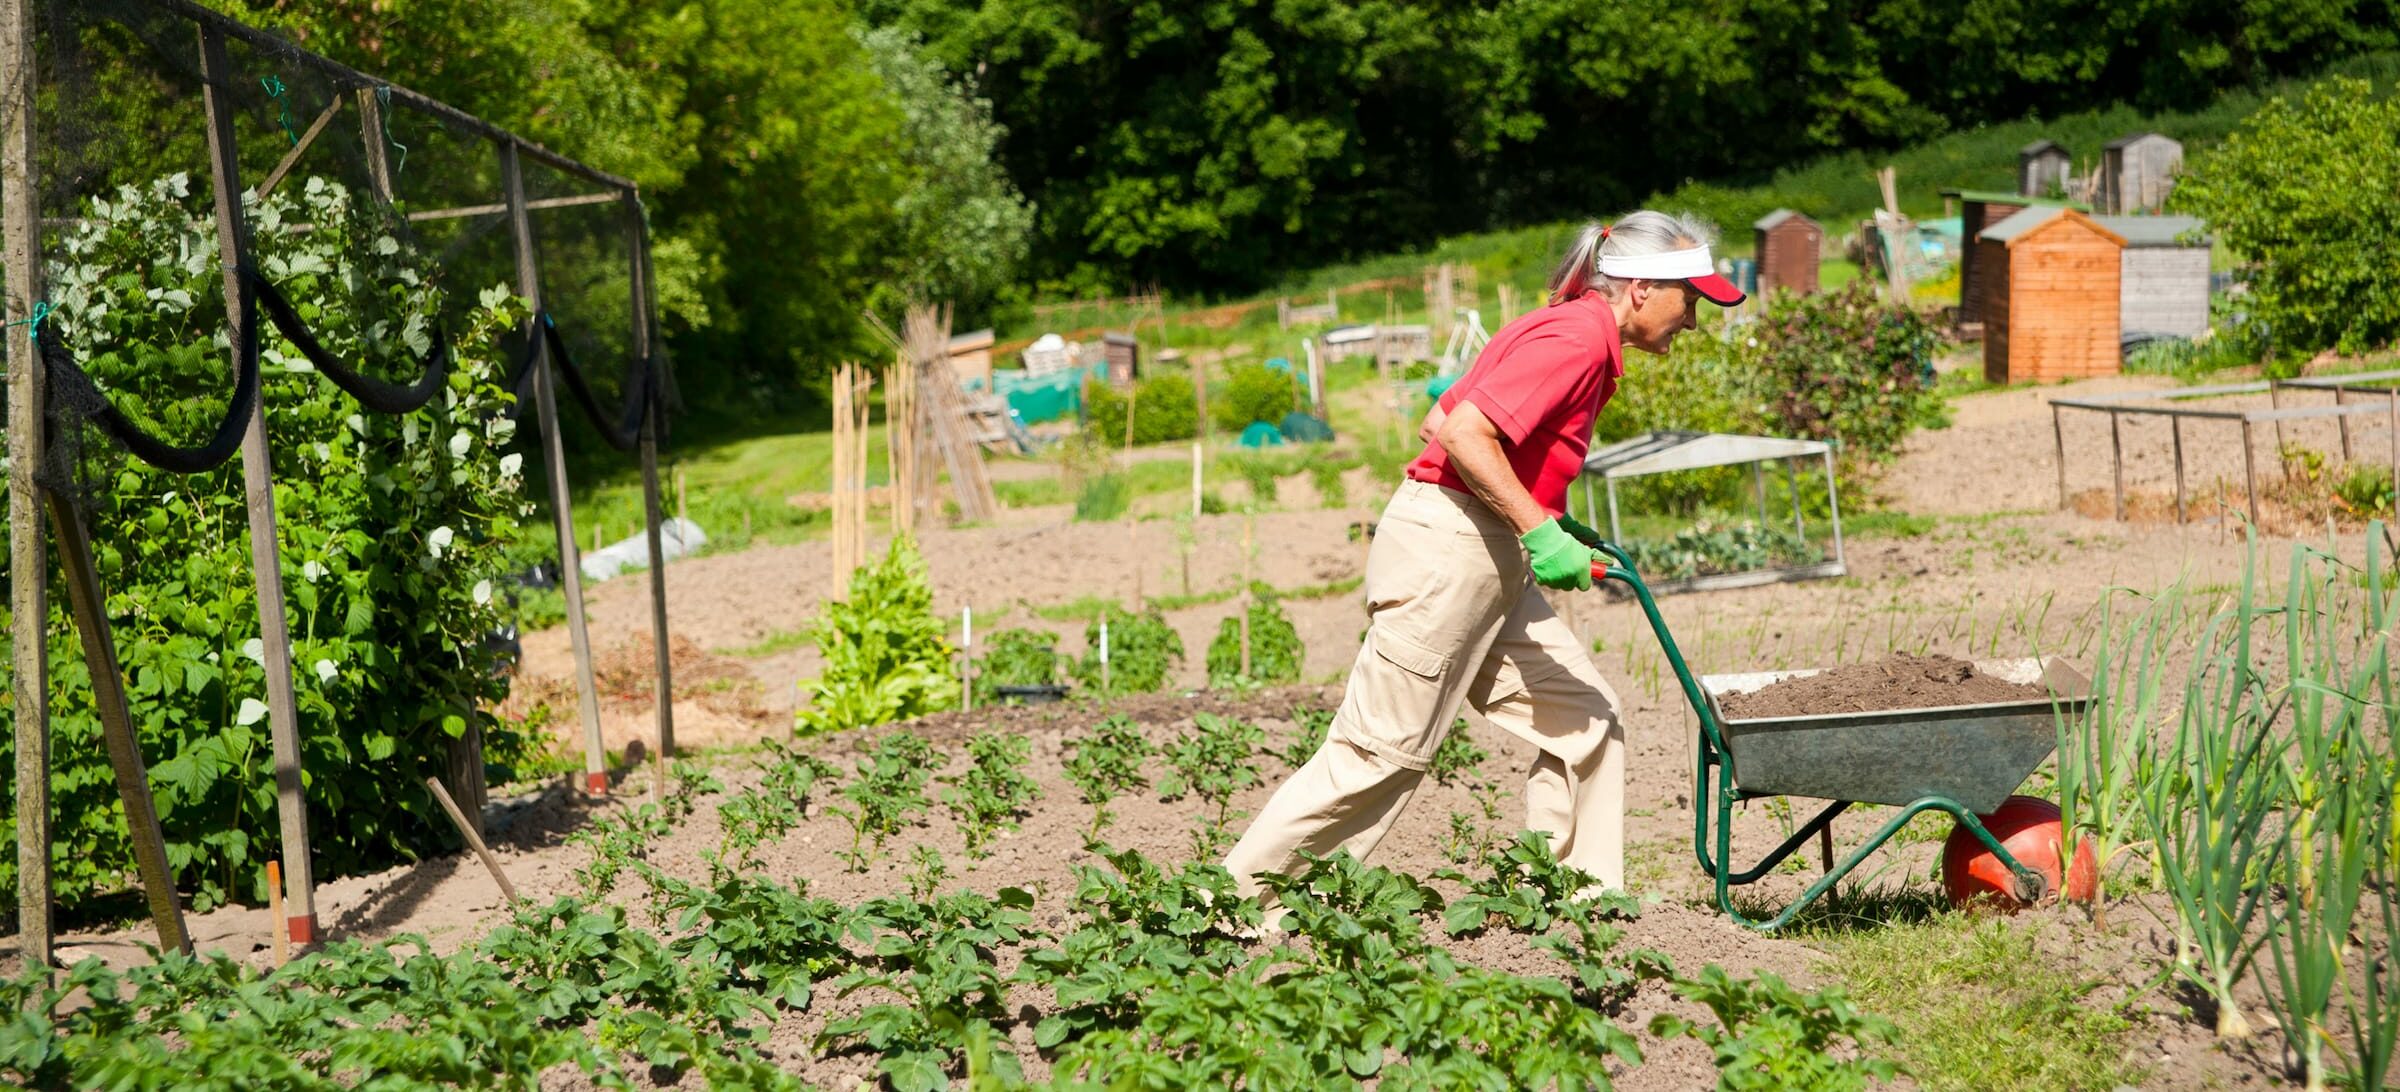 person gardening using a wheel barrow e1646140502549